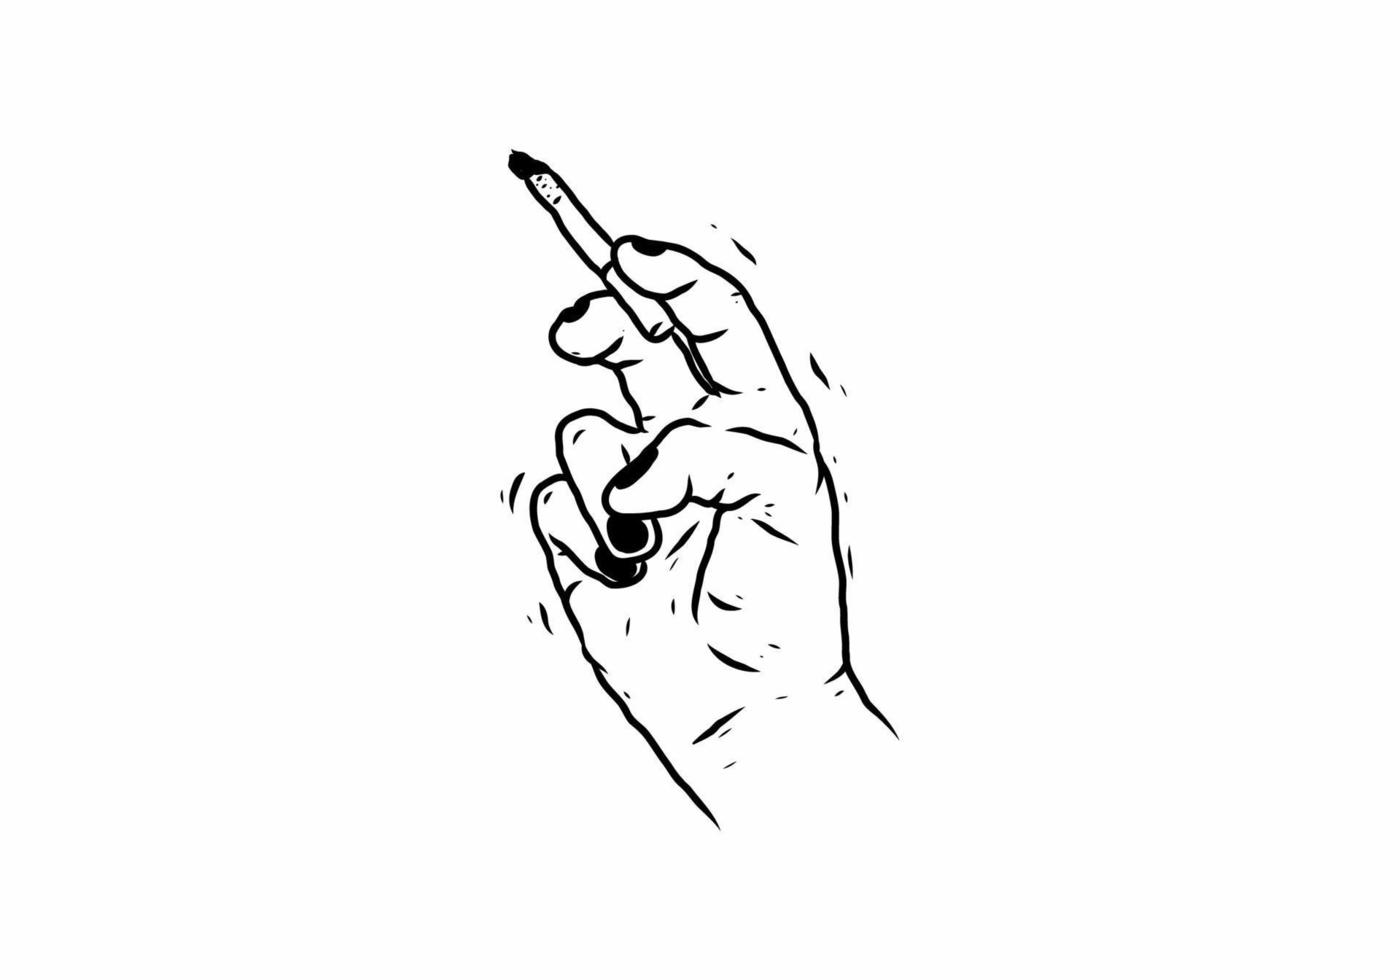 dibujo de ilustración negra de la mano que sostiene el cigarrillo vector